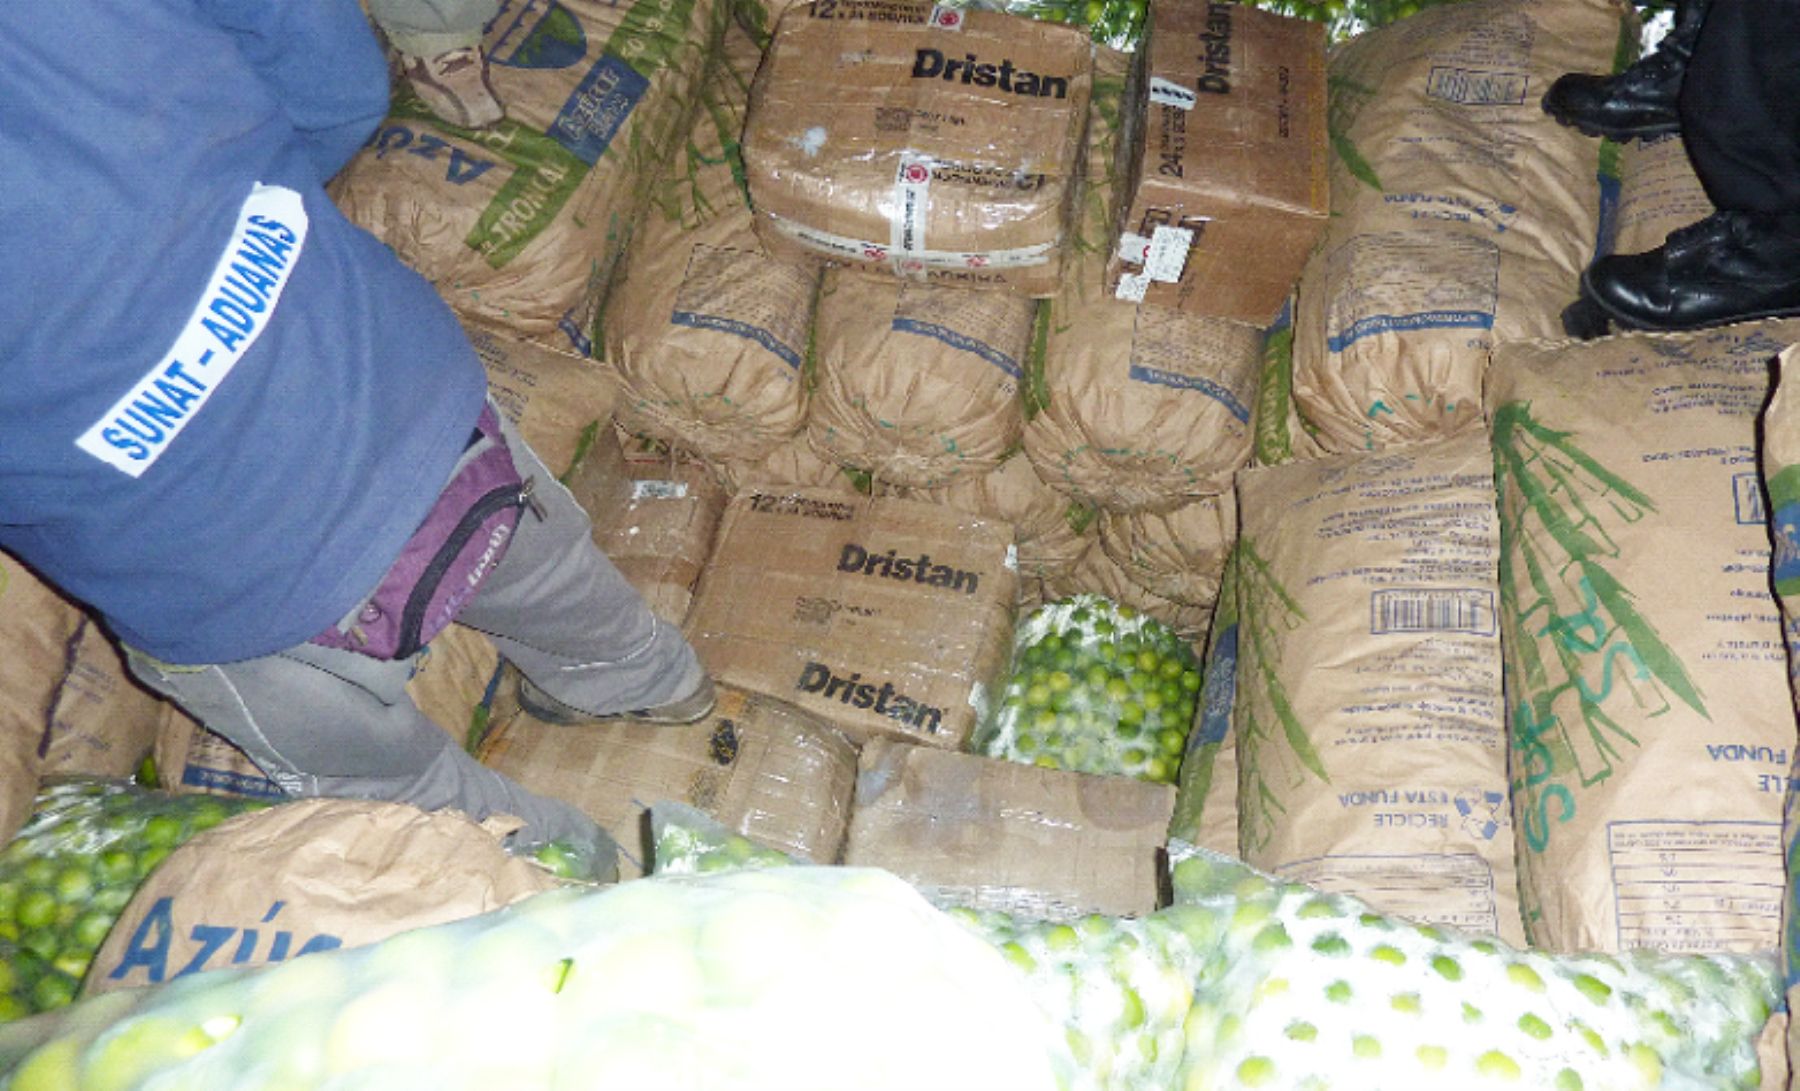 En camión remolque trasportaban medicinas camufladas entre limones. Foto: Sunat.